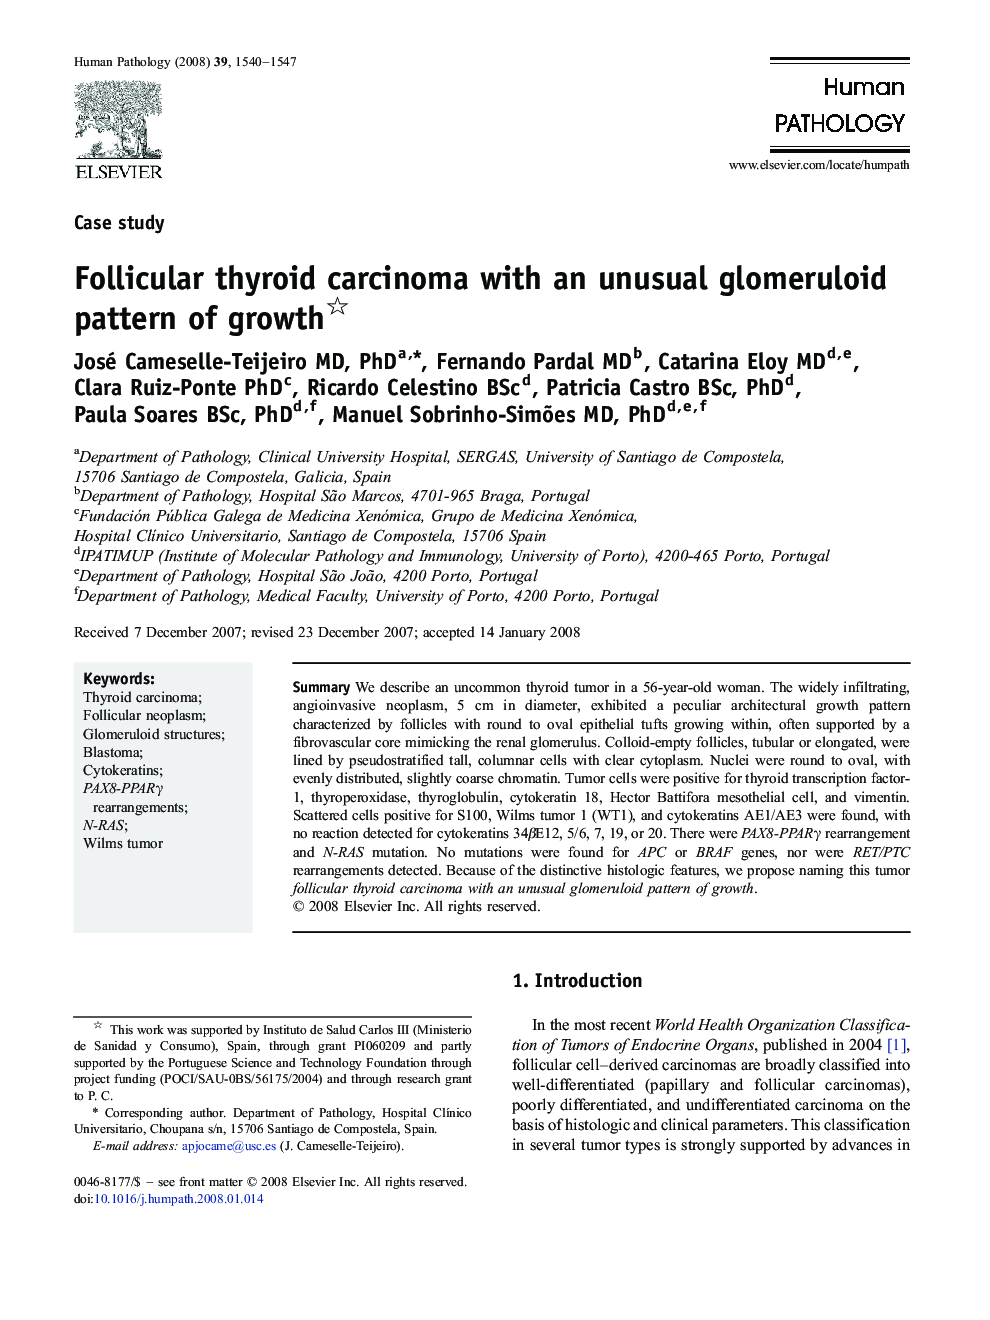 Follicular thyroid carcinoma with an unusual glomeruloid pattern of growth 